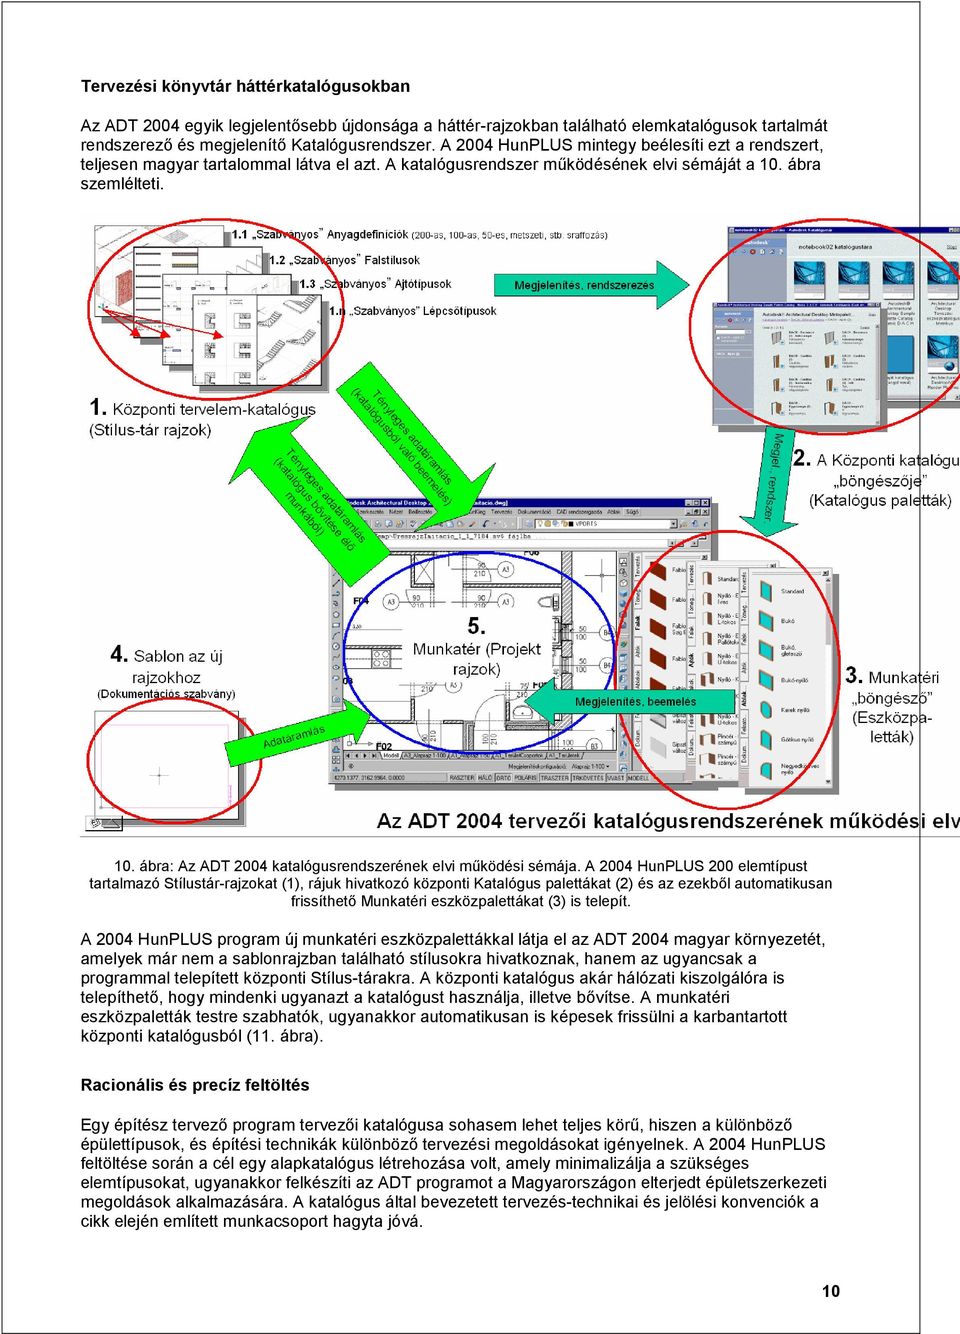 ábra szemlélteti. 10. ábra: Az ADT 2004 katalógusrendszerének elvi működési sémája.